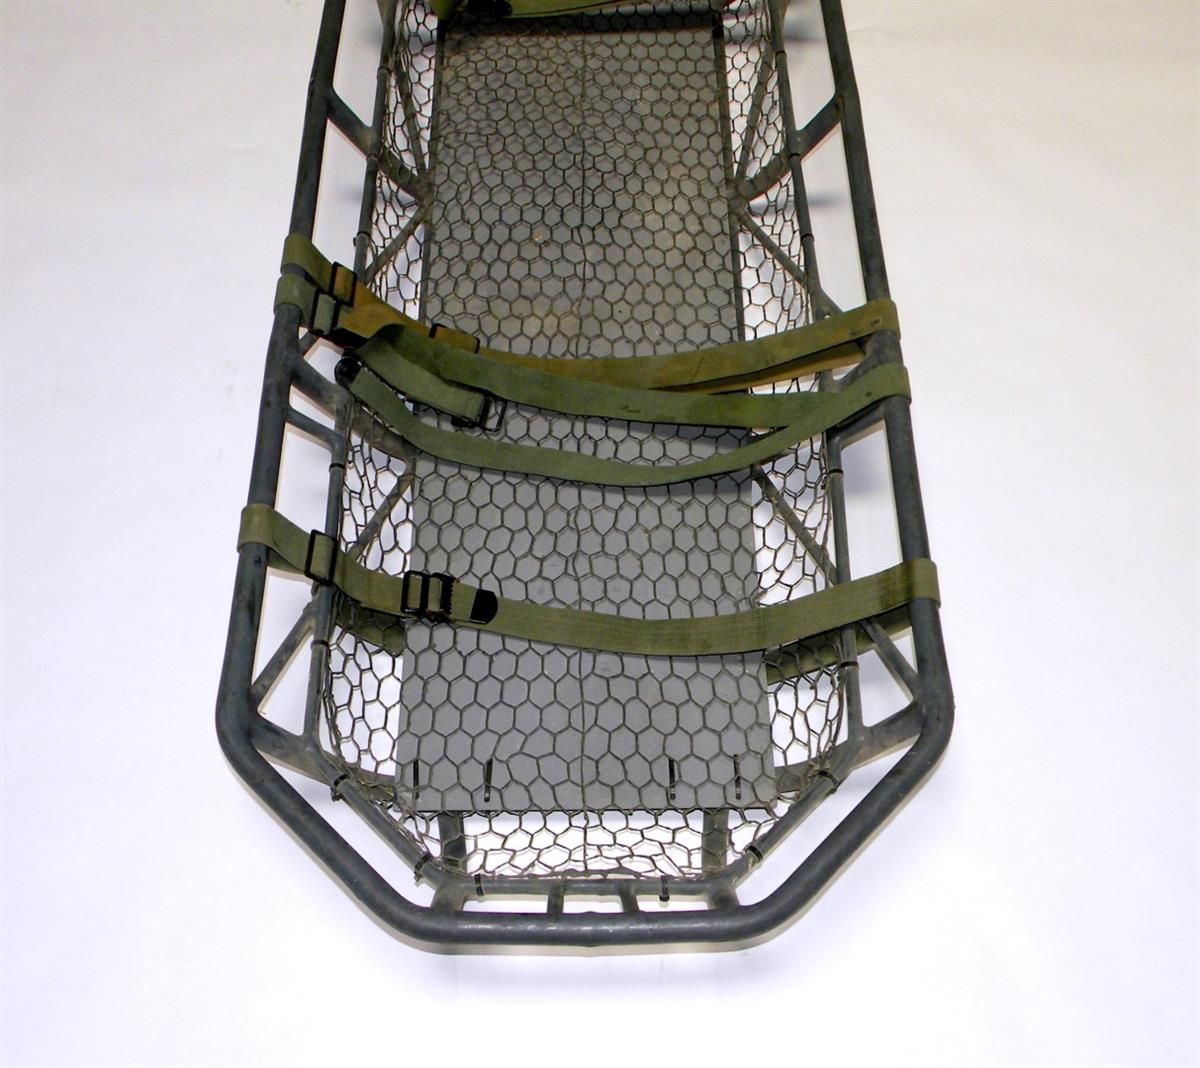 SP-1767 | 6530-01-315-4784 USGI Rescue Wire Basket  Extraction Litter  Stretcher  (5).JPG